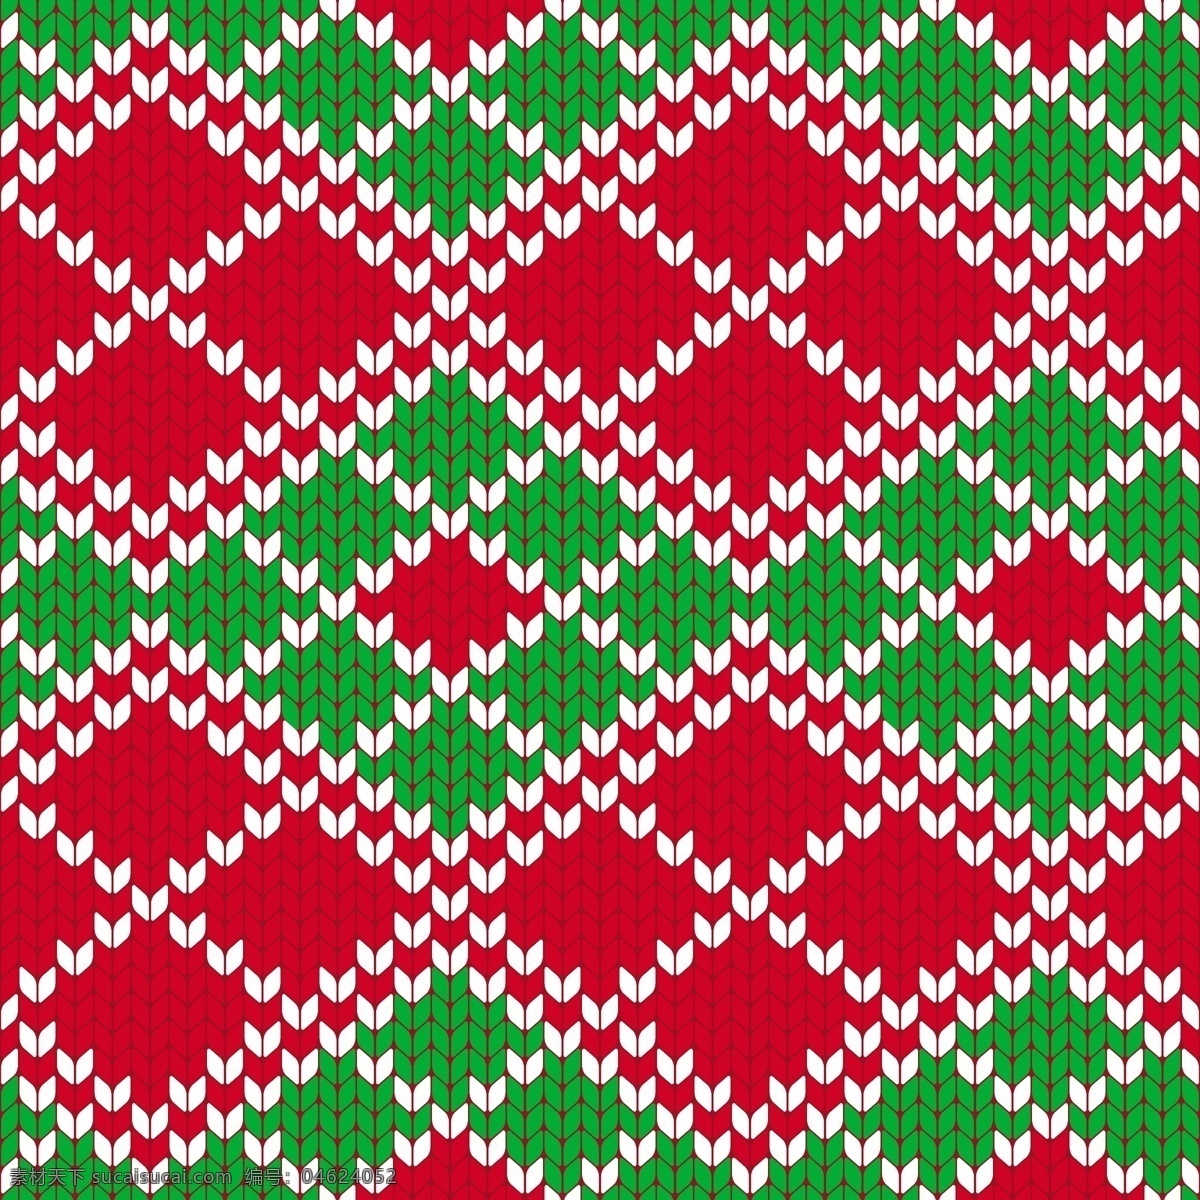 红 绿 方格 圣诞节 填充 背景 矢量 彩色 冬季 红色 节日 平面素材 设计素材 矢量素材 纹路 下雪 雪白